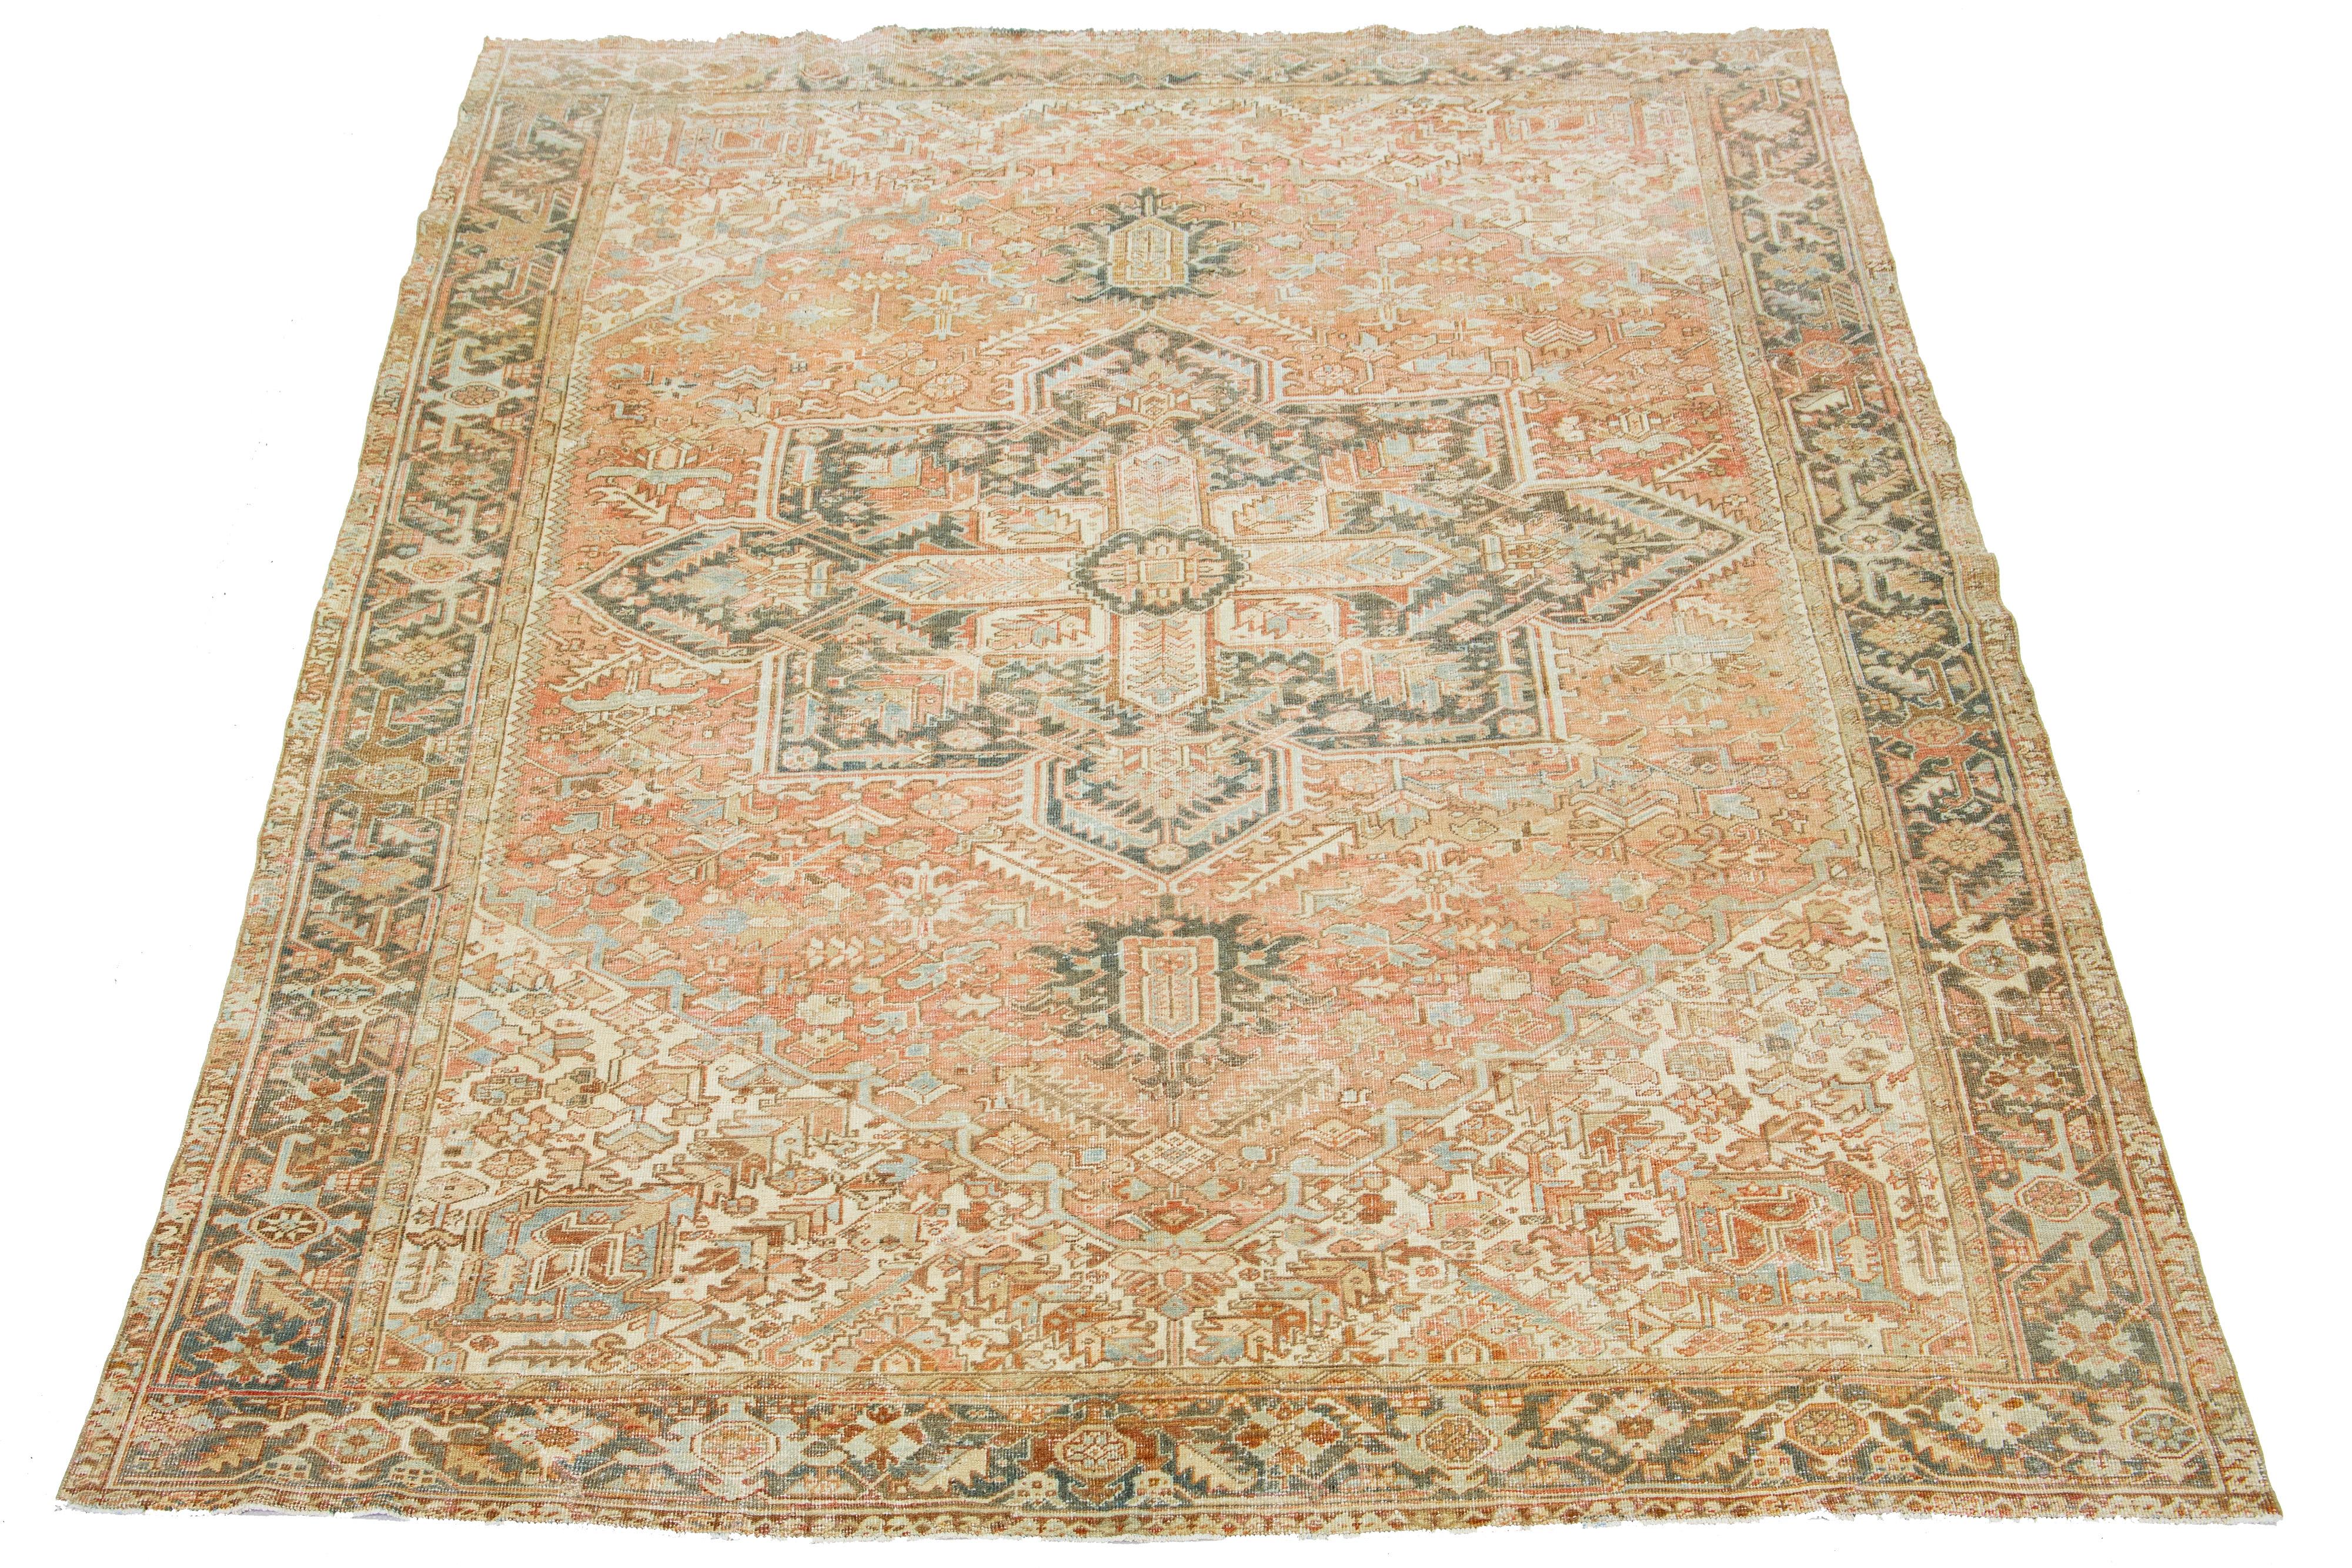 Dieser antike persische Heriz-Teppich ist aus handgeknüpfter Wolle gefertigt. Das rostfarbene Feld weist ein faszinierendes Medaillonmuster auf, das mit Blau-, Beige- und Grautönen verziert ist.

Dieser Teppich misst 9'7